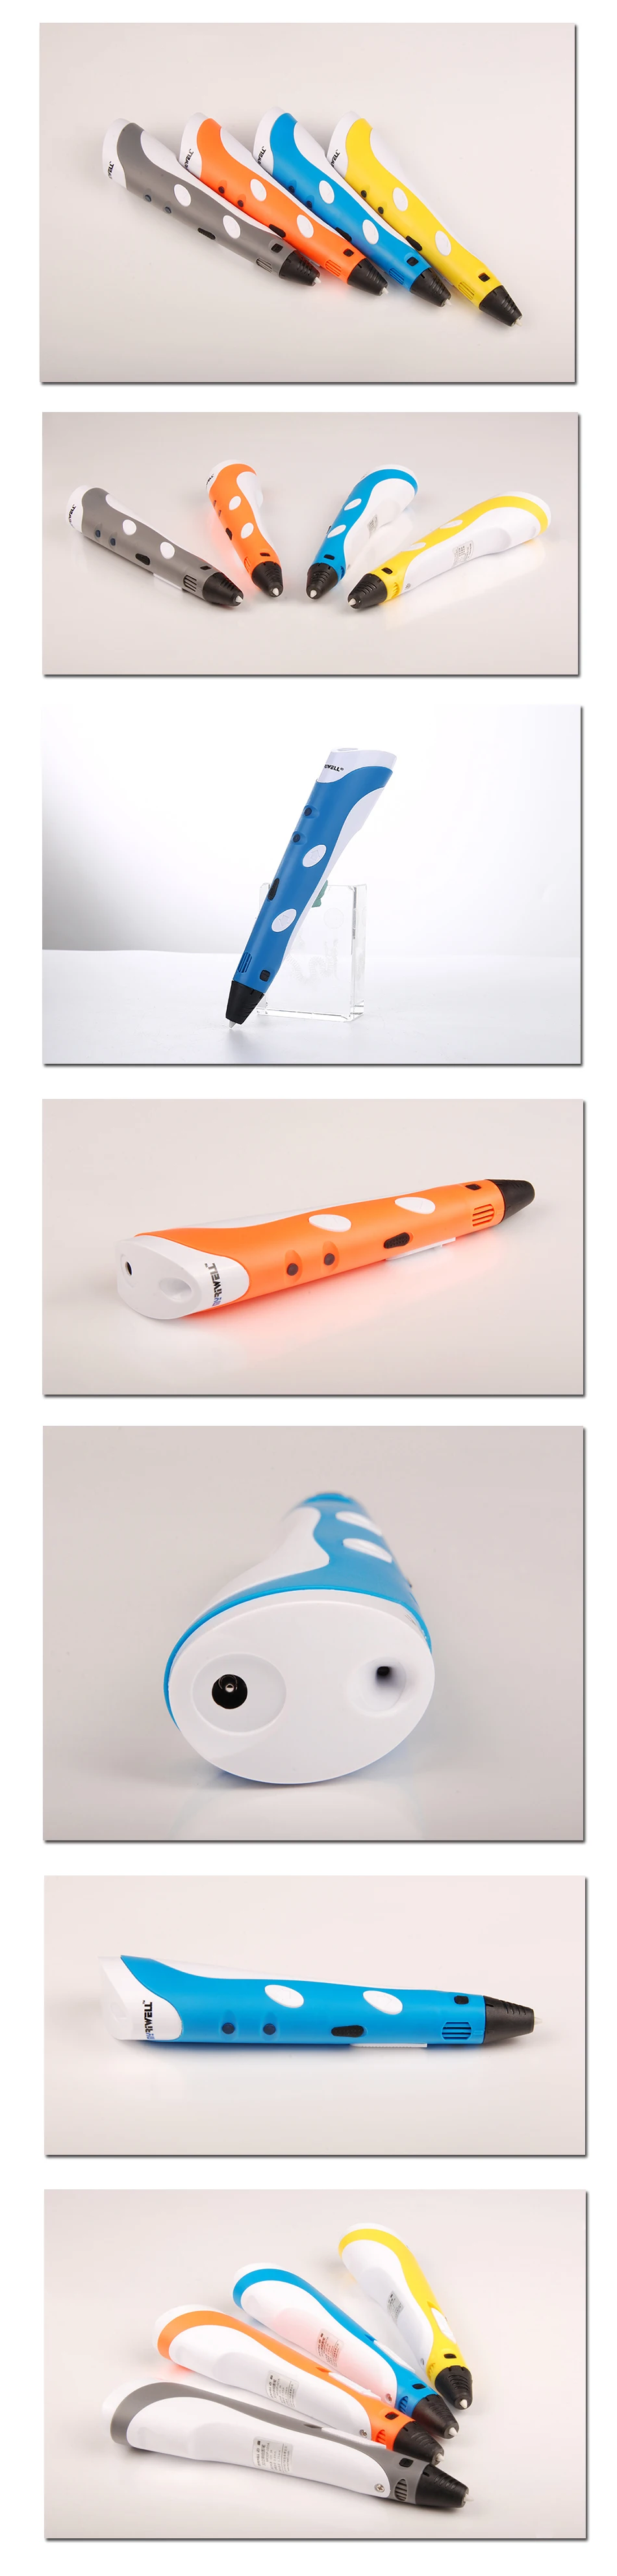 Myriwell 3D Ручка с 50 м 1,75 мм ABS нитью, умная 3D Ручка для печати, 3d ручки для детей, подарок на день рождения, Рождество, 3d Ручка для рисования